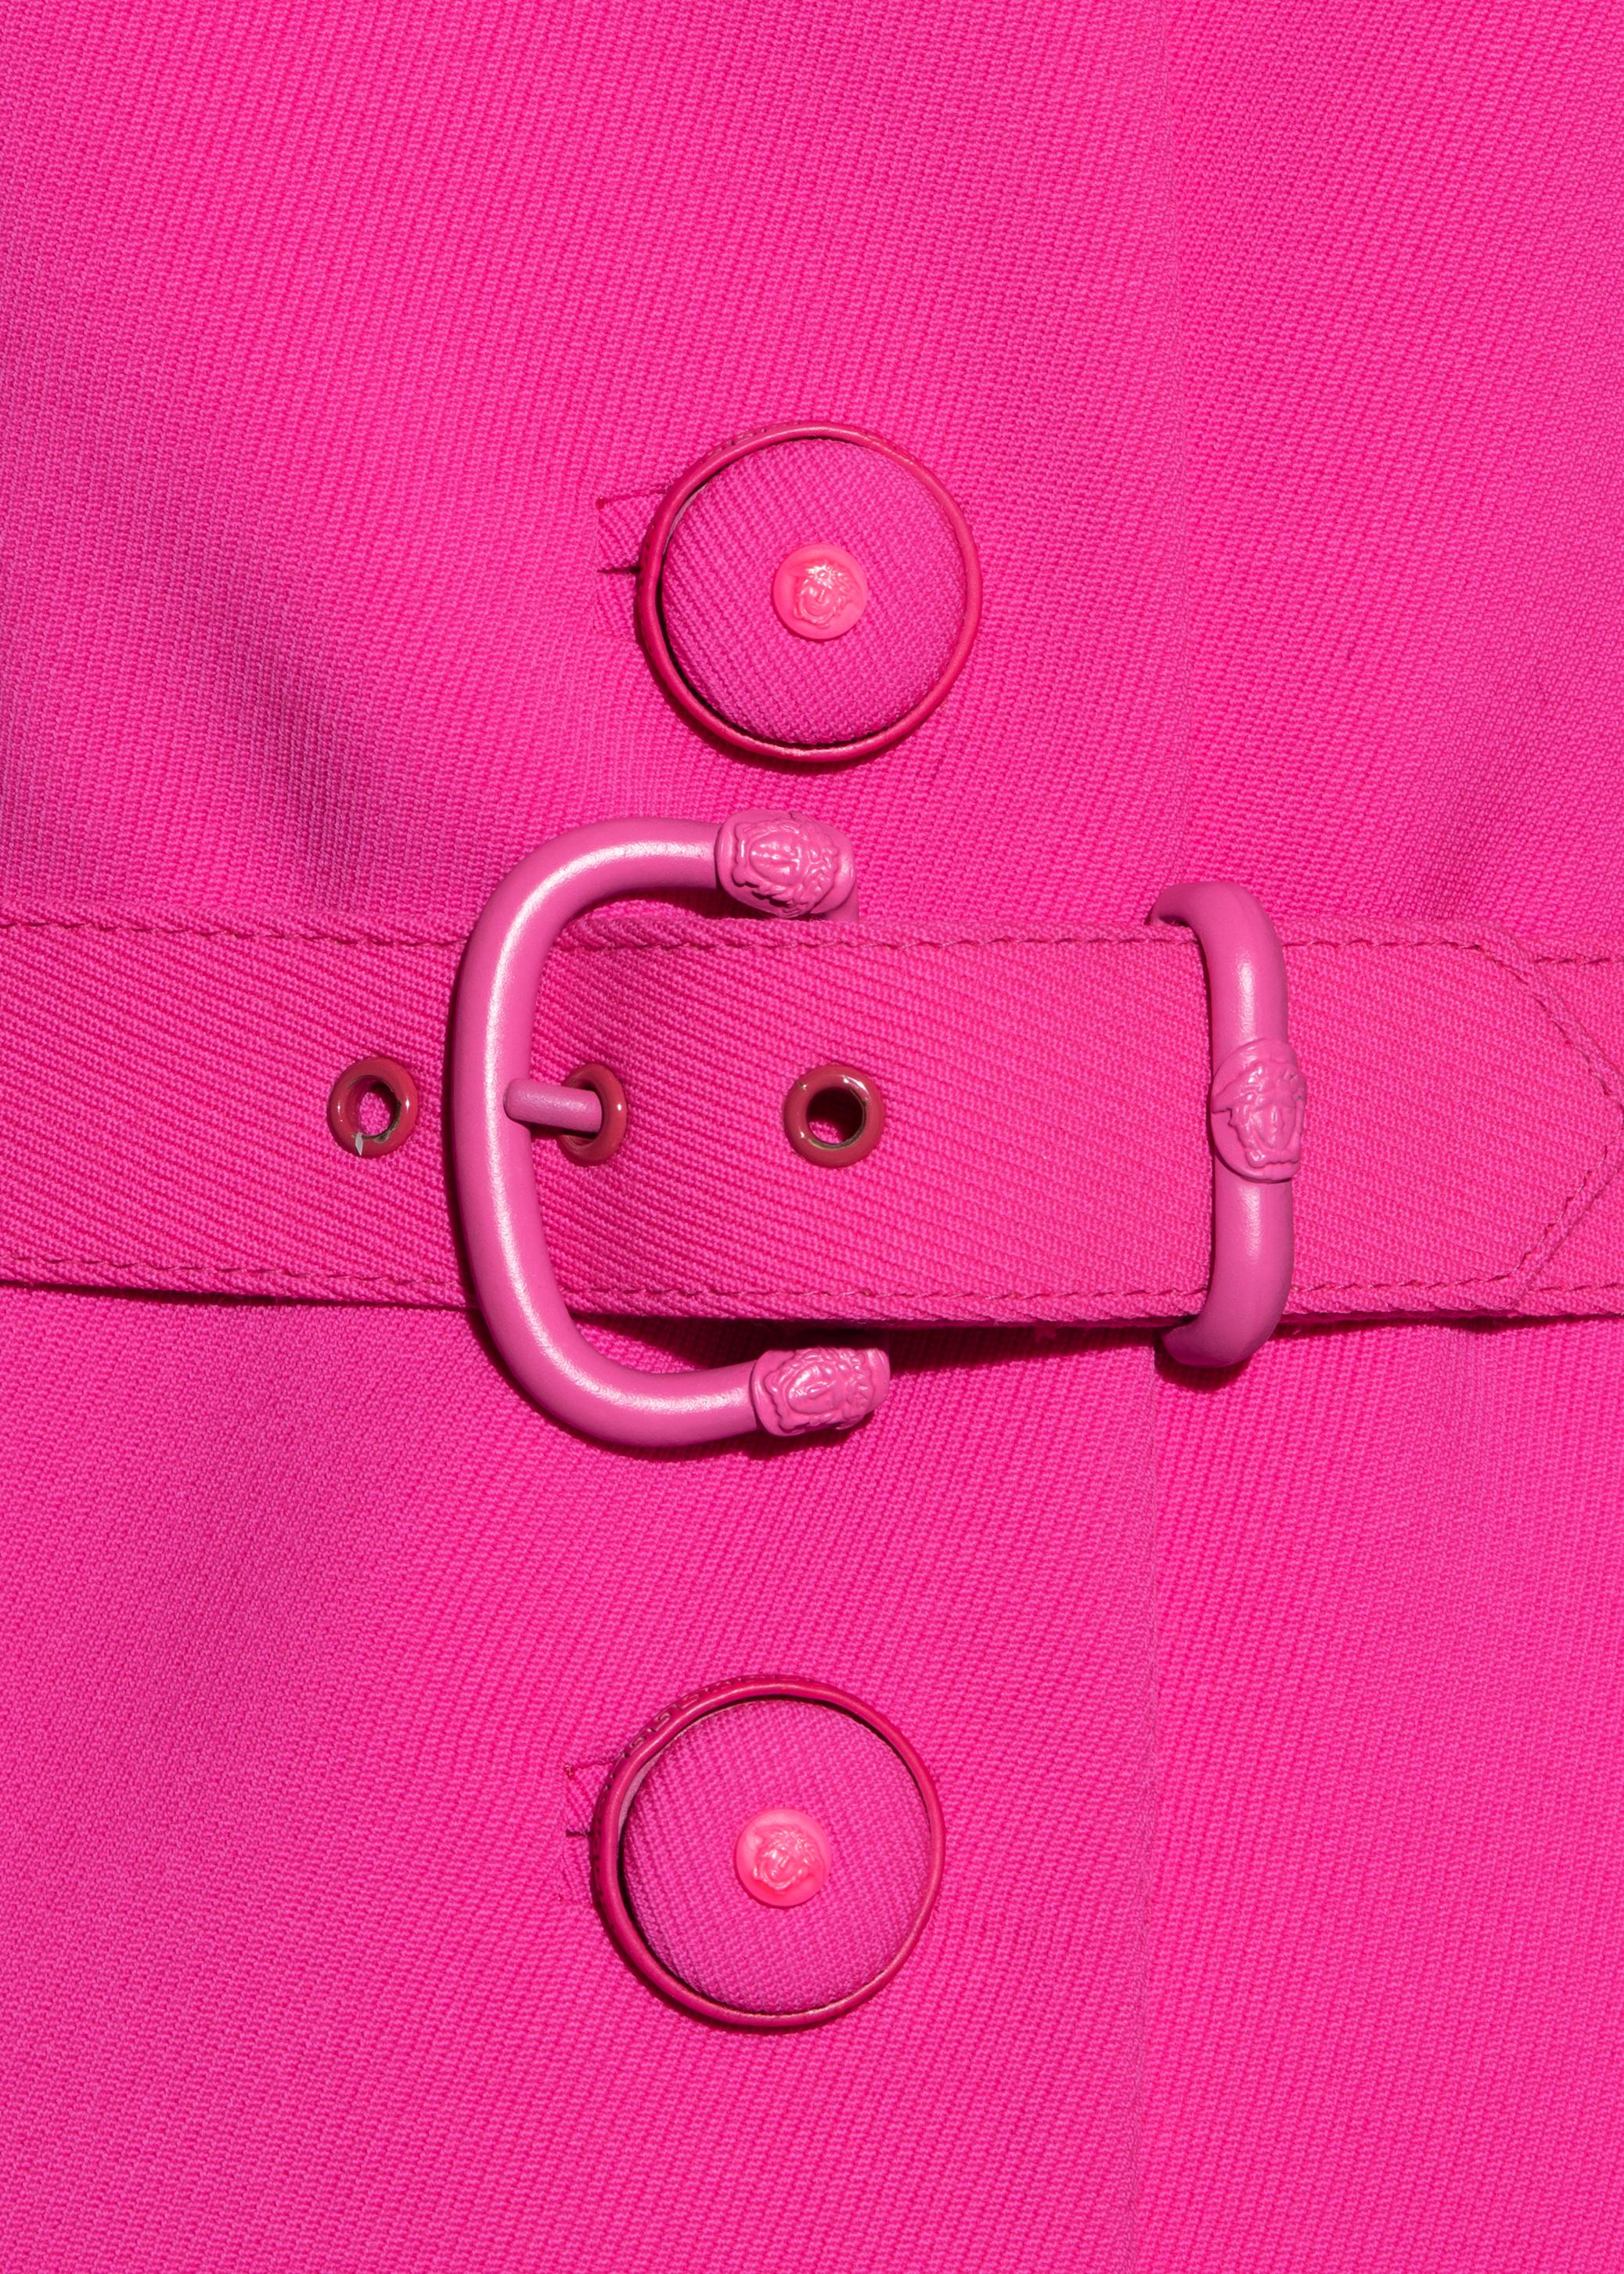 versace pink skirt